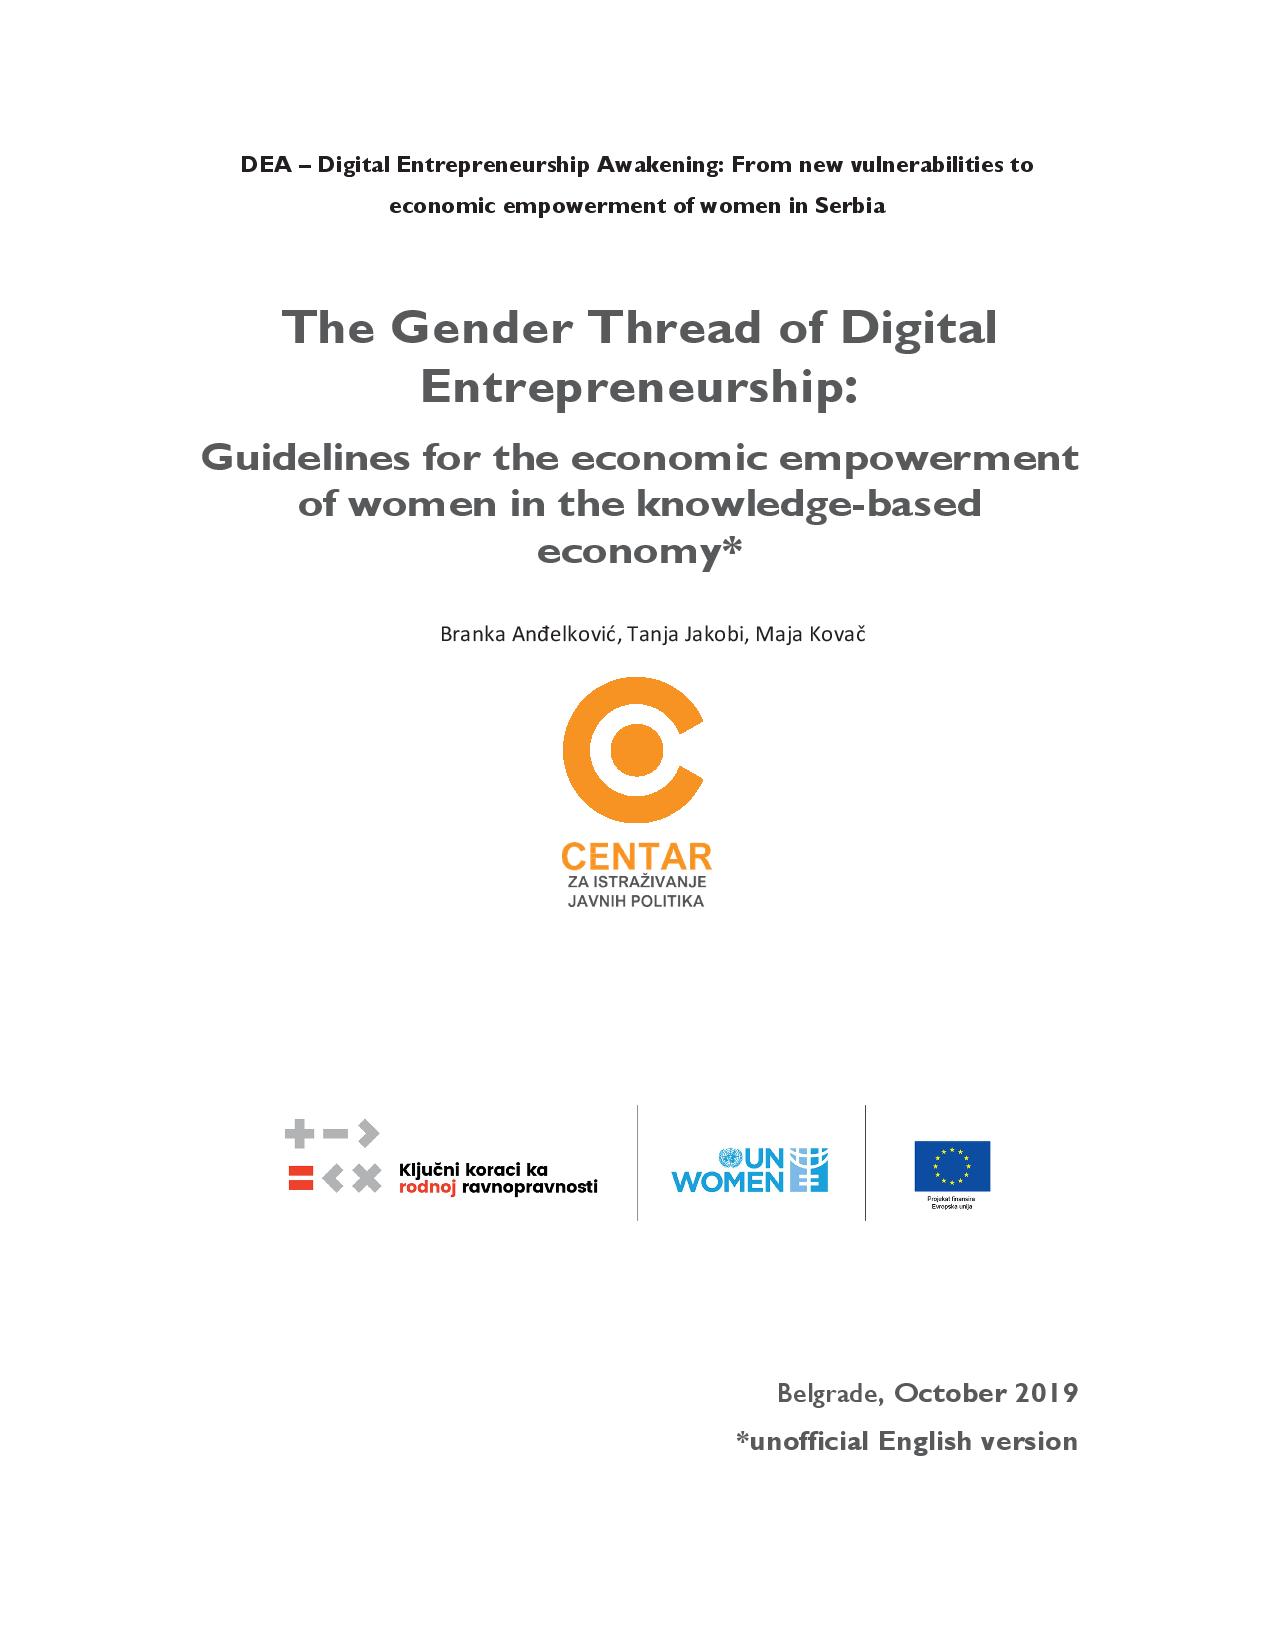 The Gender Thread of Digital Entrepreneurship